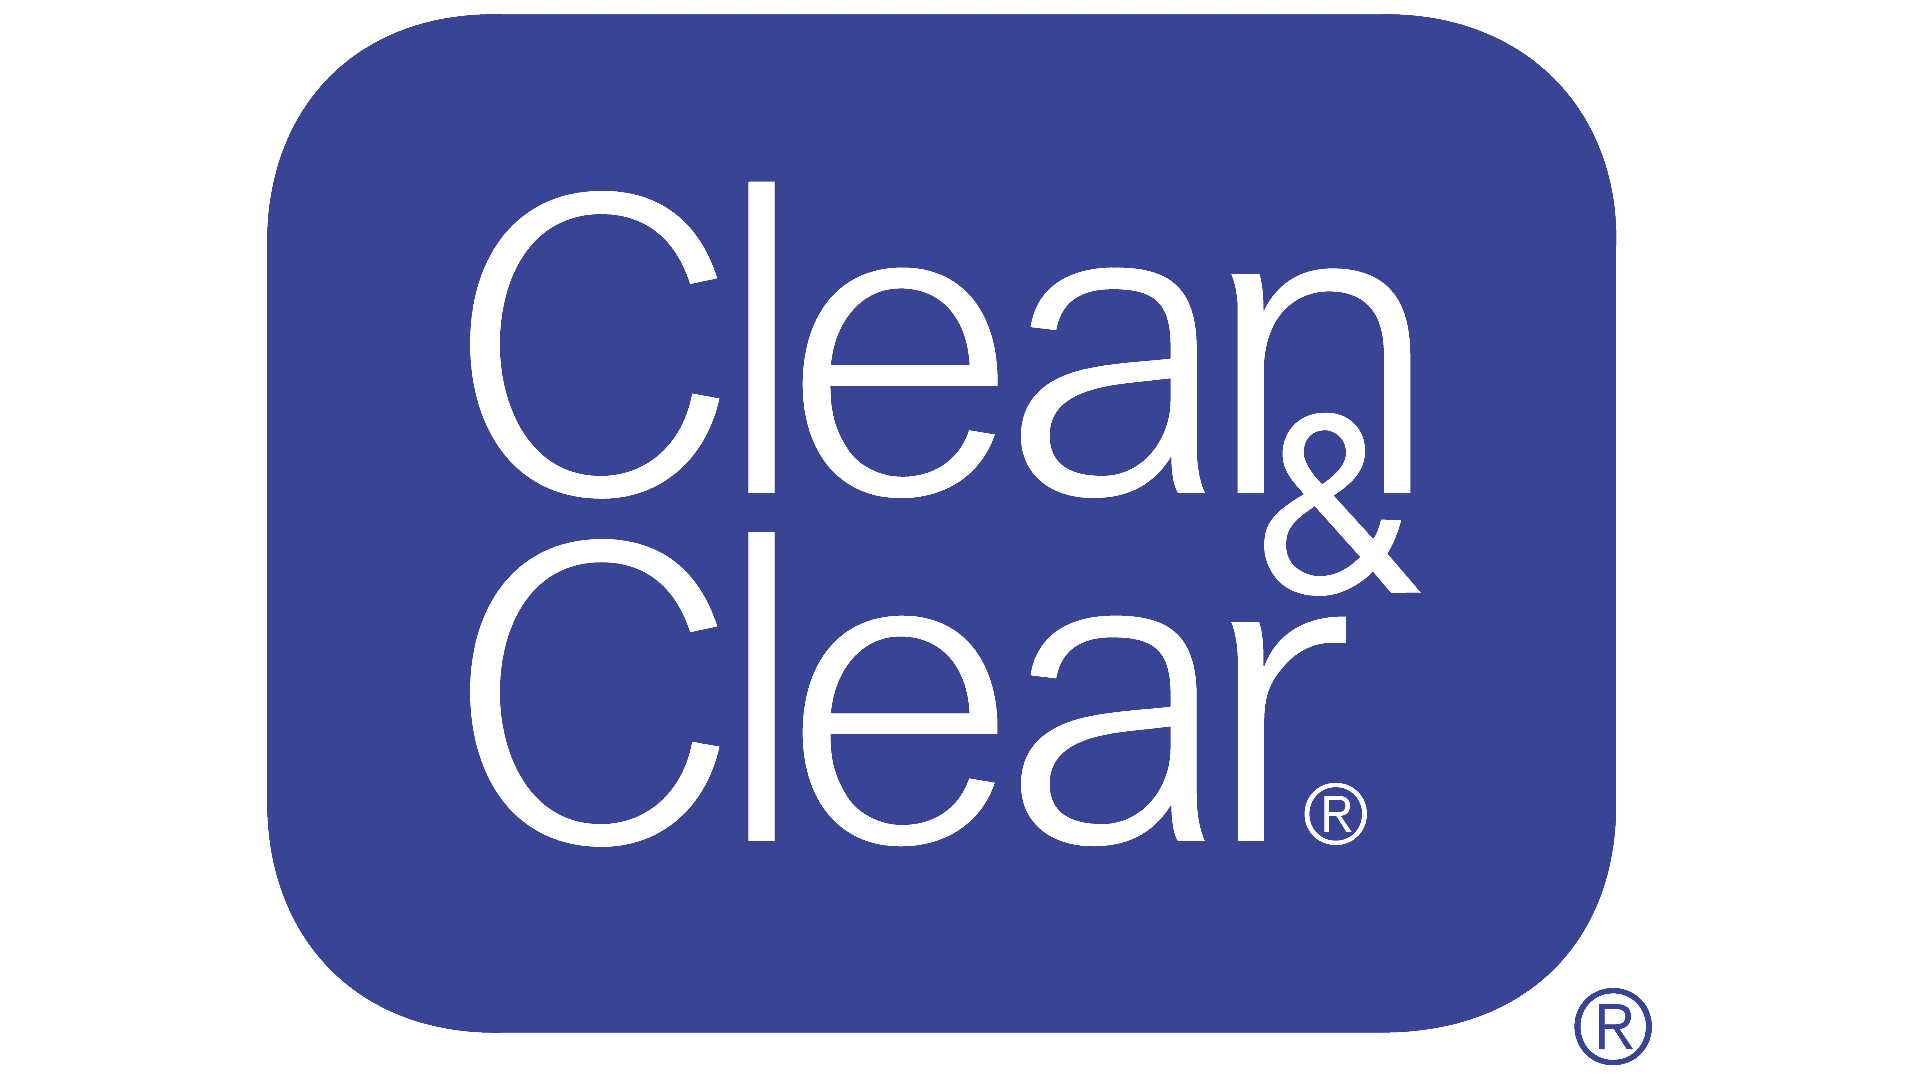 Brand: Clean & Clear